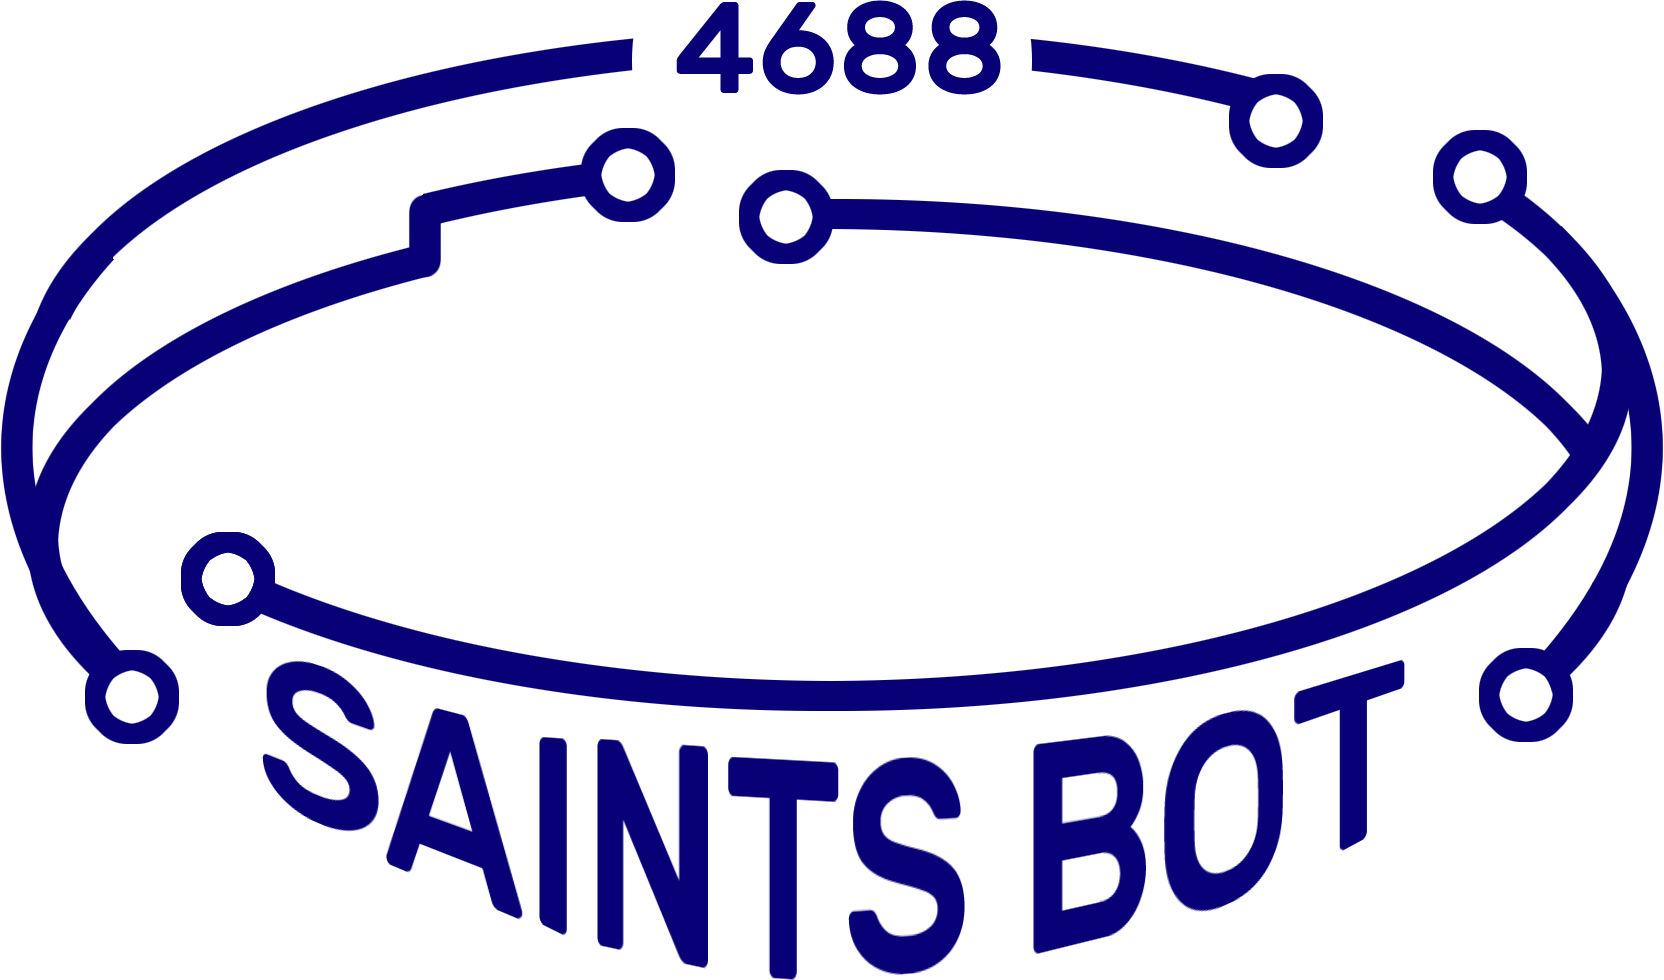 Saints Bot #4688